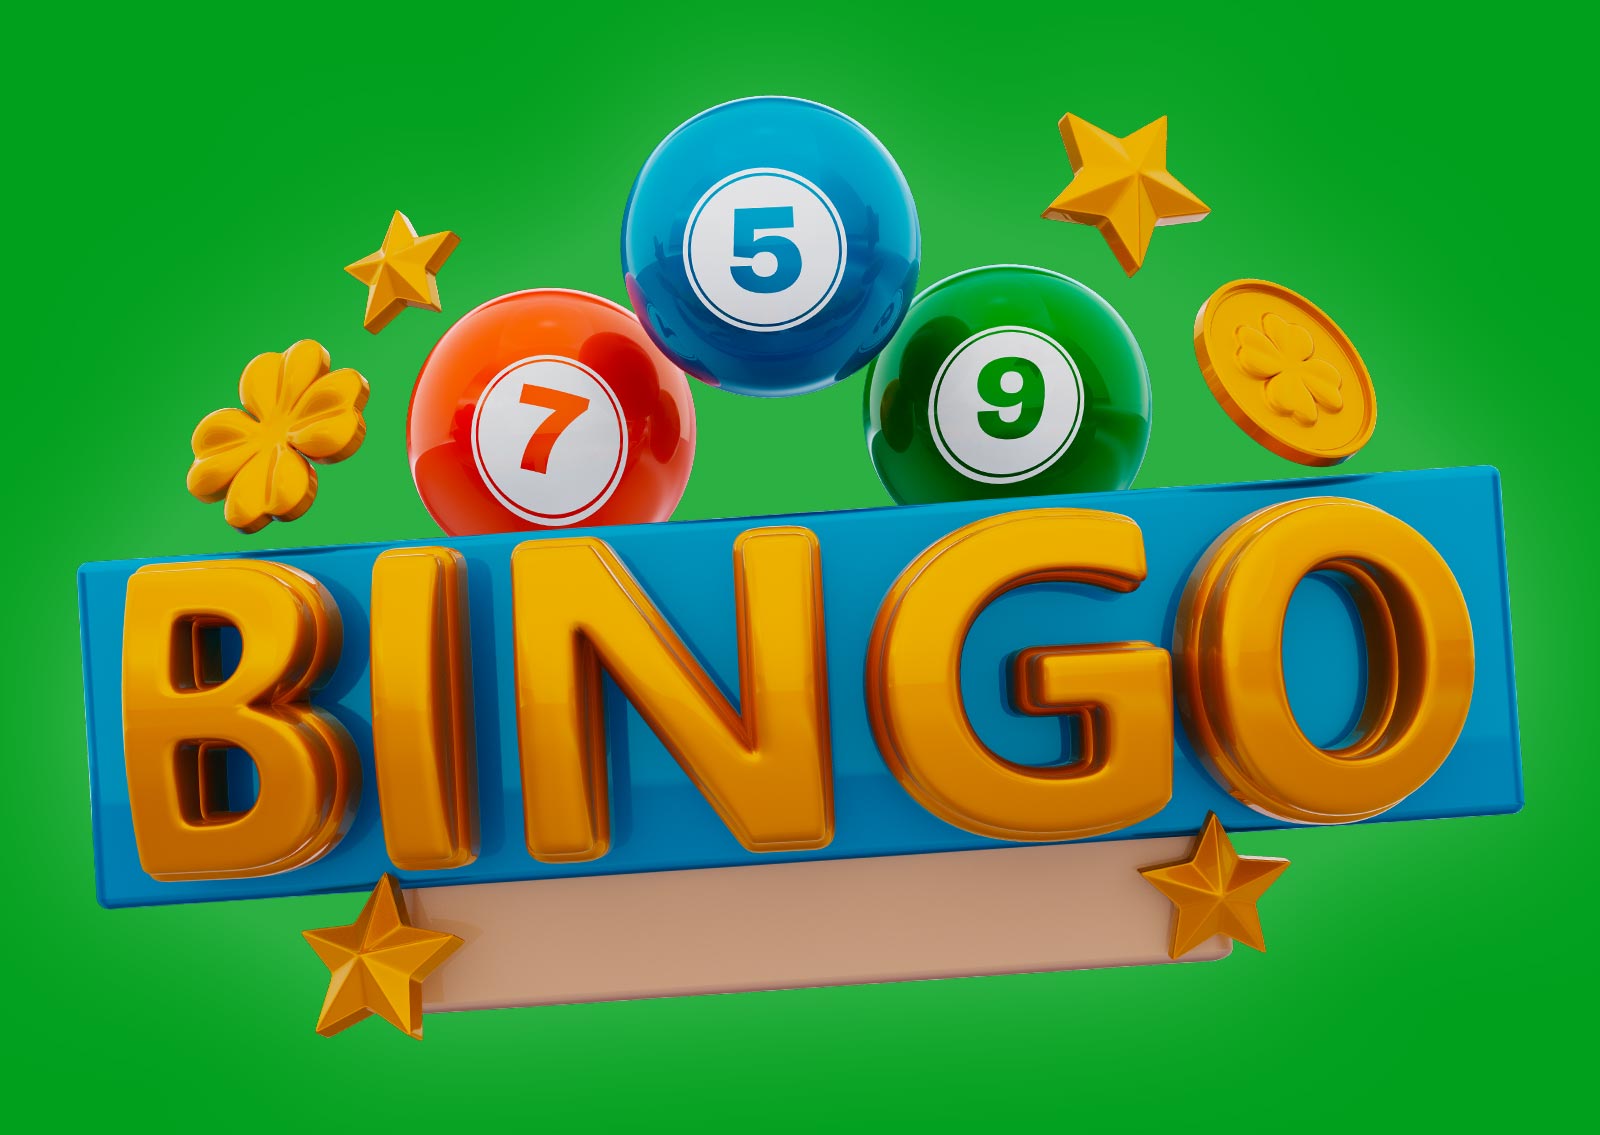 c-mo-jugar-al-bingo-online-miputumayo-noticias